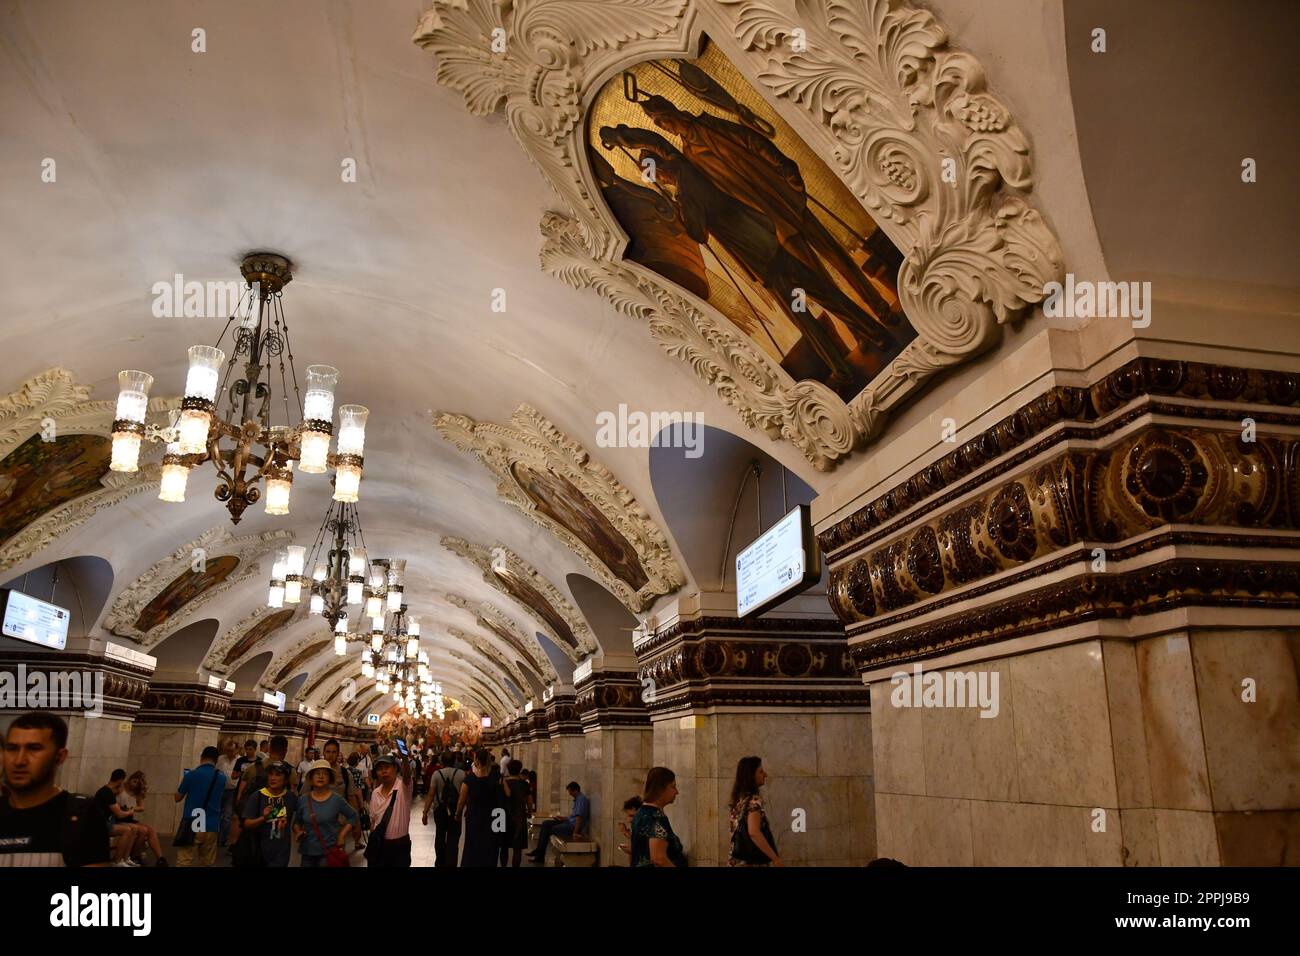 Peintures, stuc et lustres au plafond d'une station de métro à Moscou, en Russie Banque D'Images